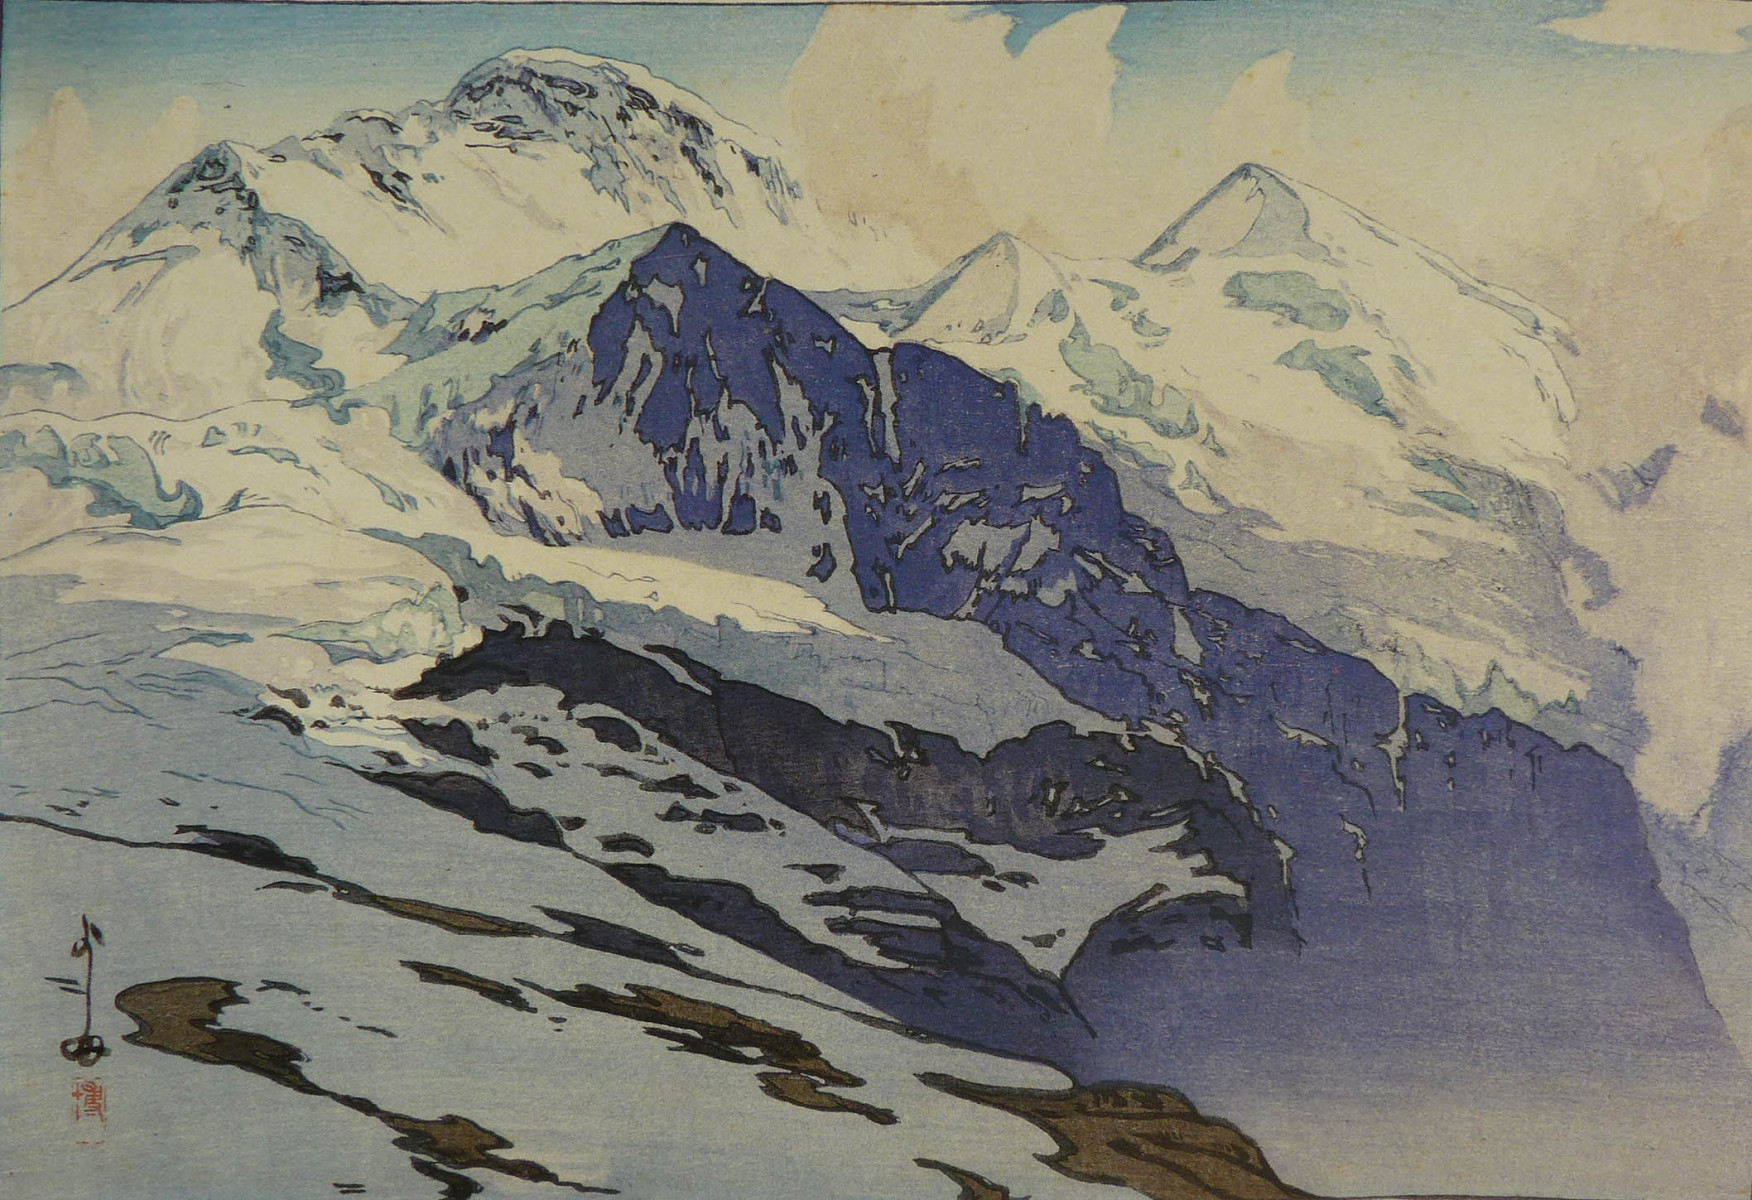 yoshida_hiroshi_1925_the_Jungfrau